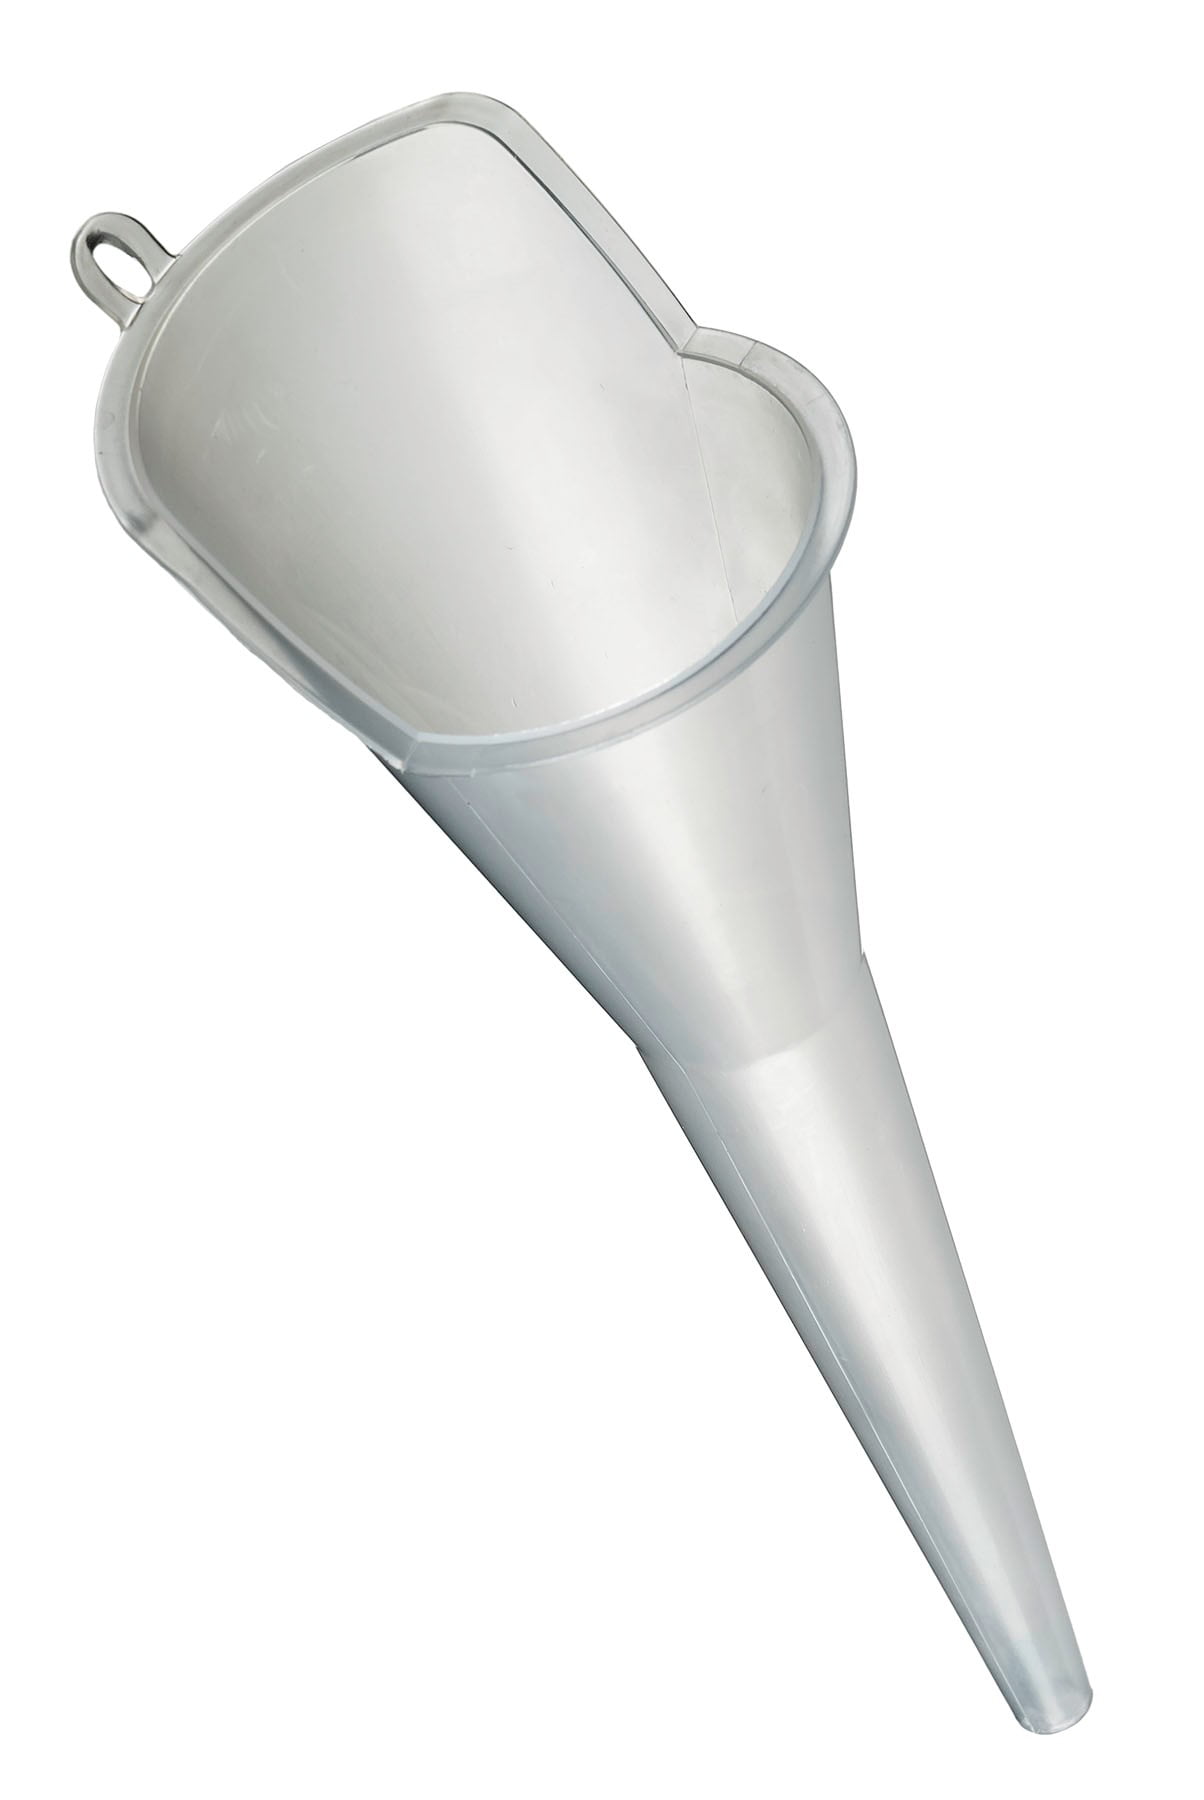 Scepter Multi-Purpose Funnel, Universal Funnel, 08672, Clear